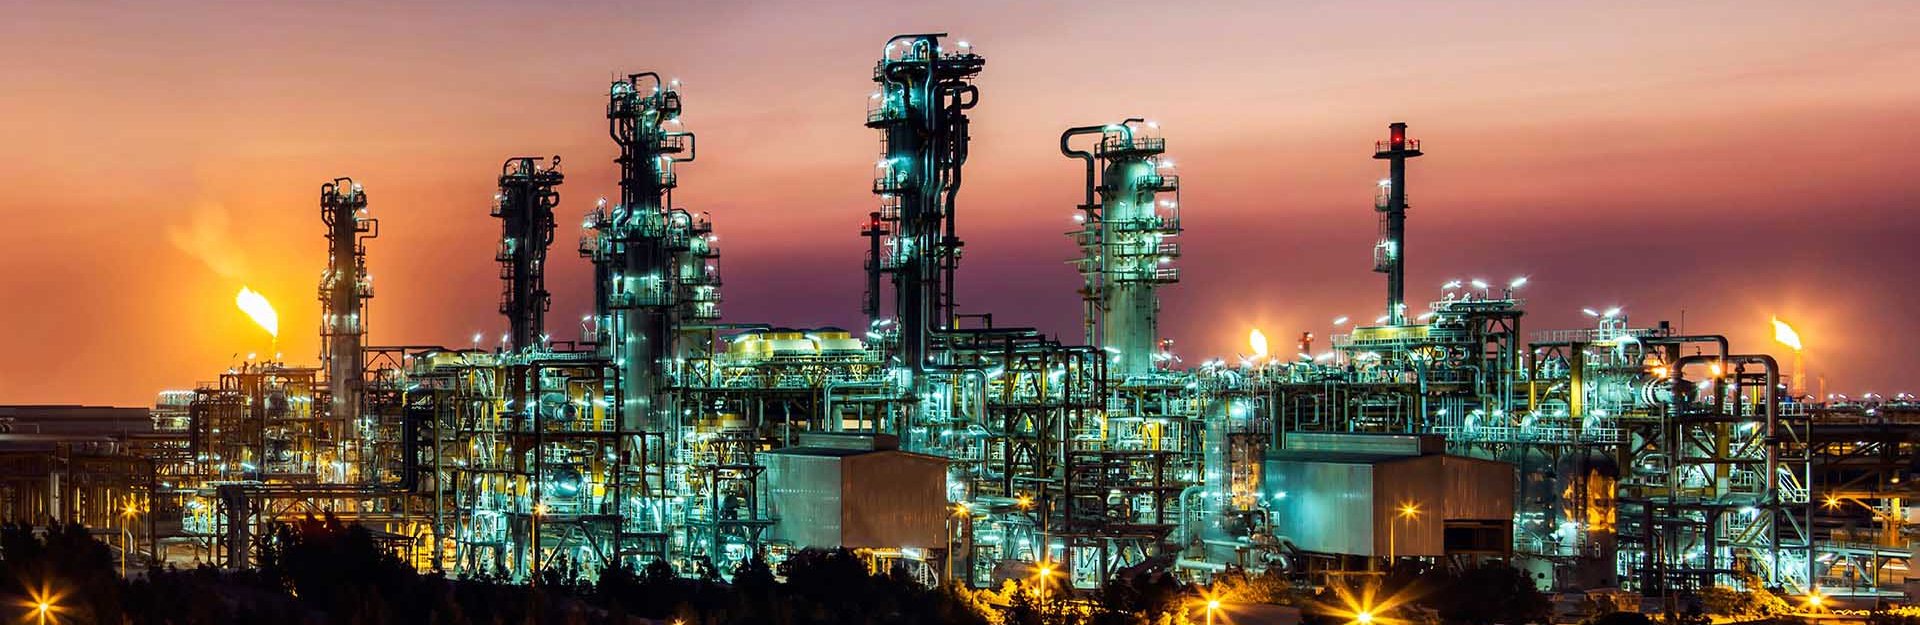 شرکت سازه صنعت سنا فارس: سازنده و تامین کننده تجهیزات صنایع نفت، گاز، پتروشیمی و فولاد